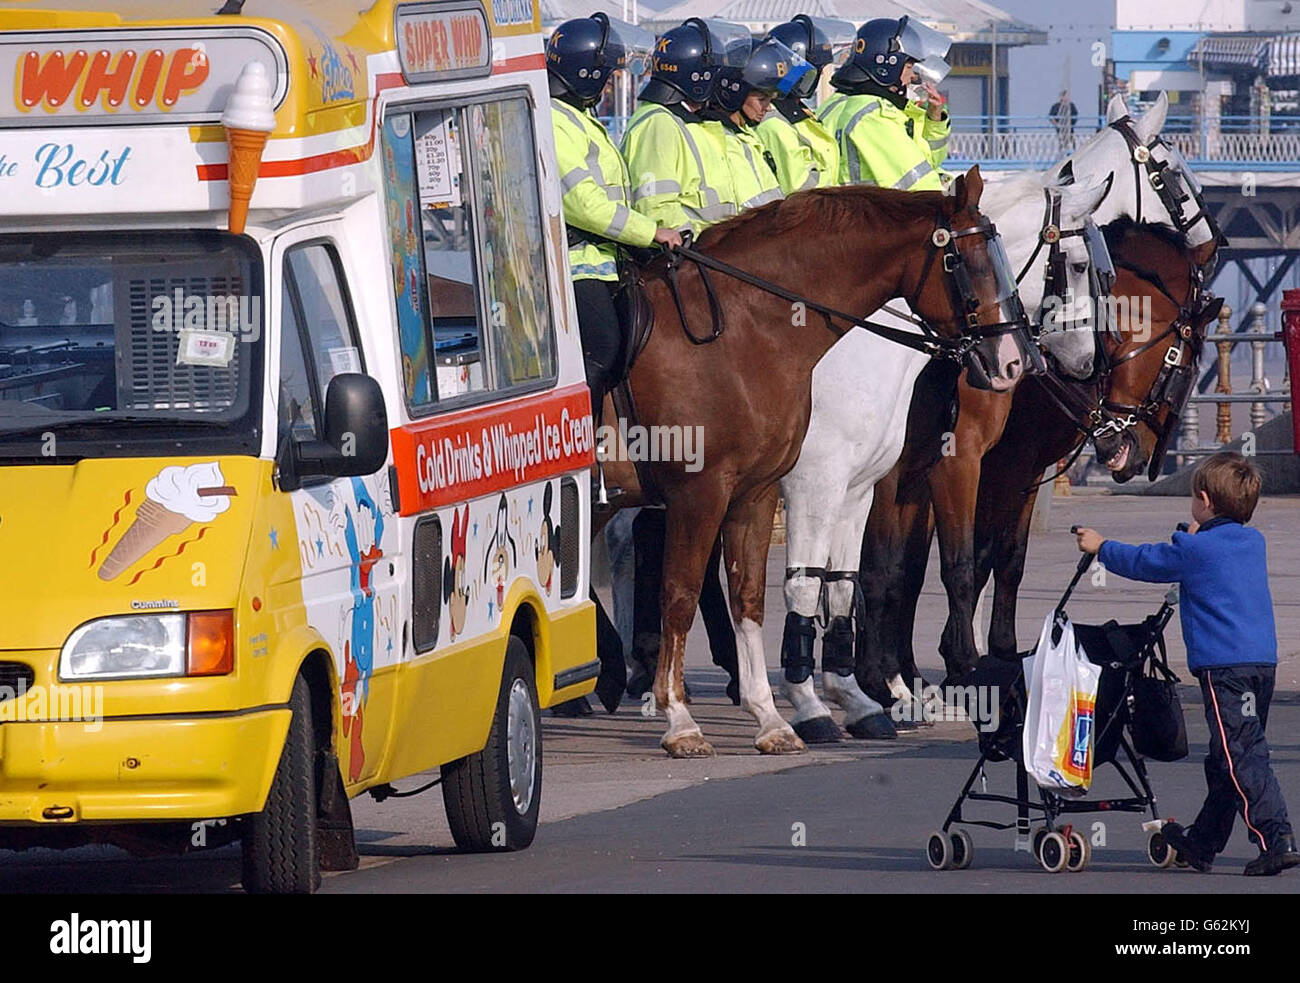 La policía armada intensificó la seguridad al inicio de la Conferencia del Partido Laborista en Blackpool. Foto de stock